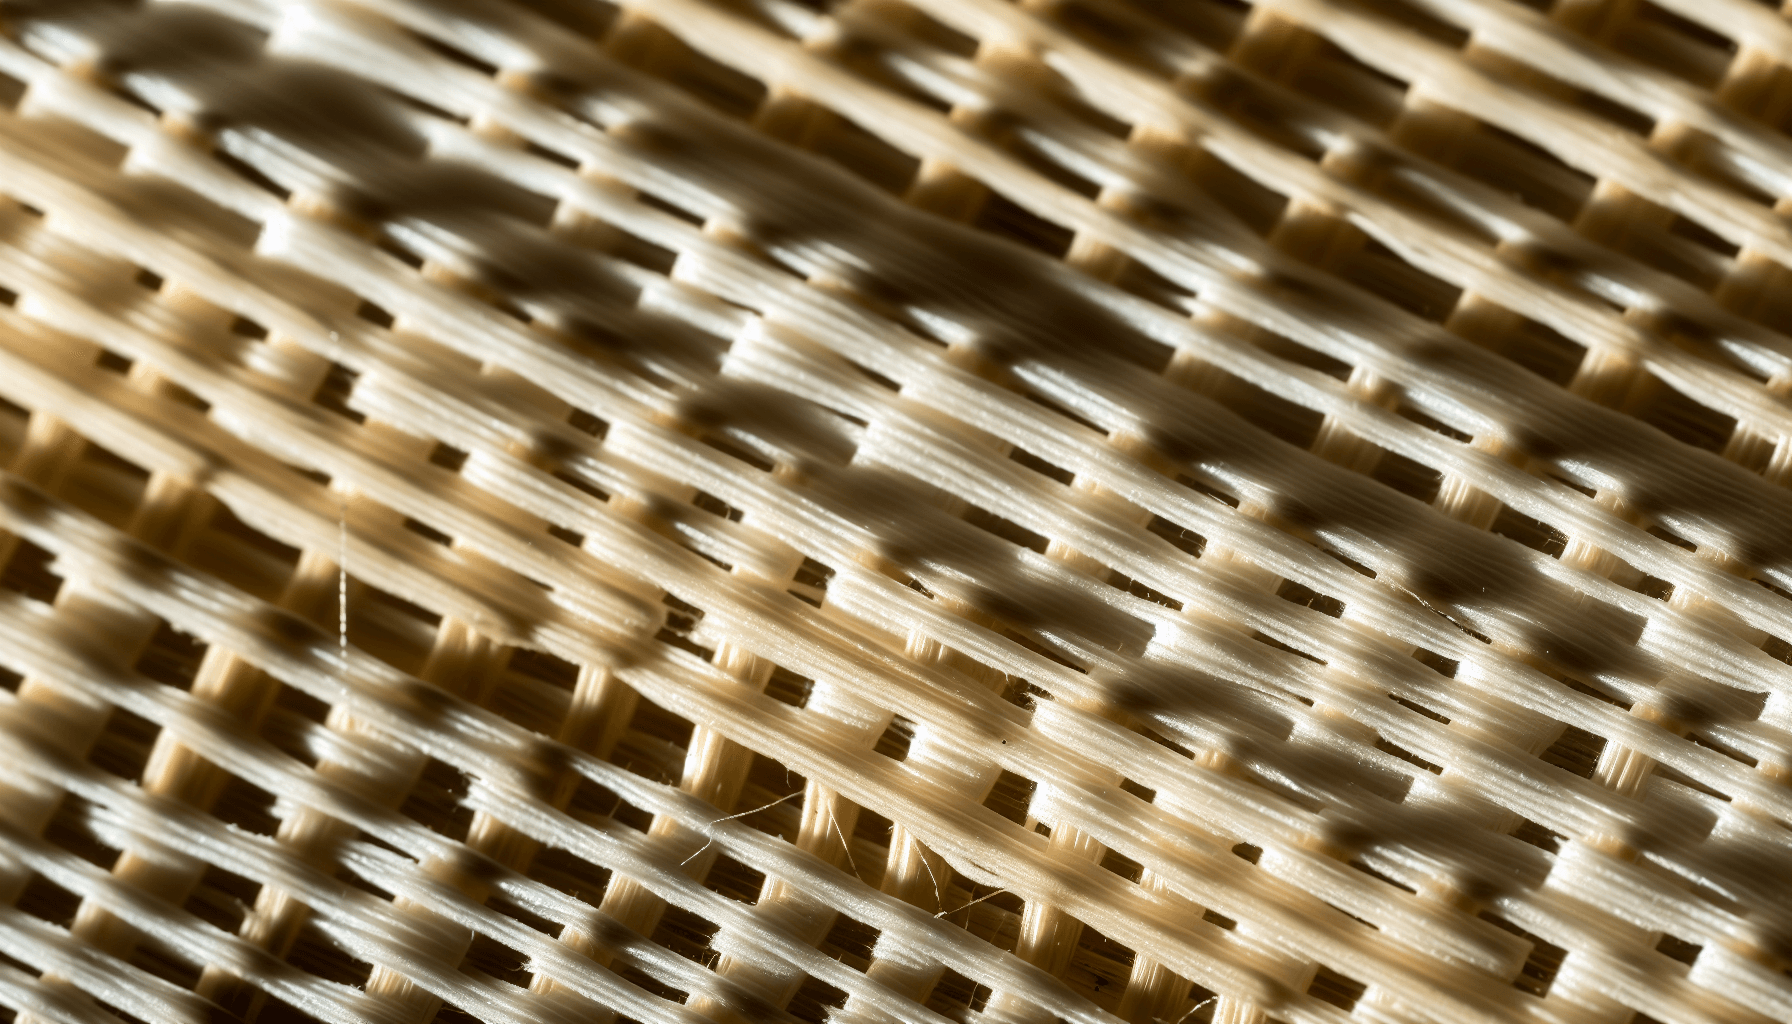 Durable bamboo sheets fabric close-up